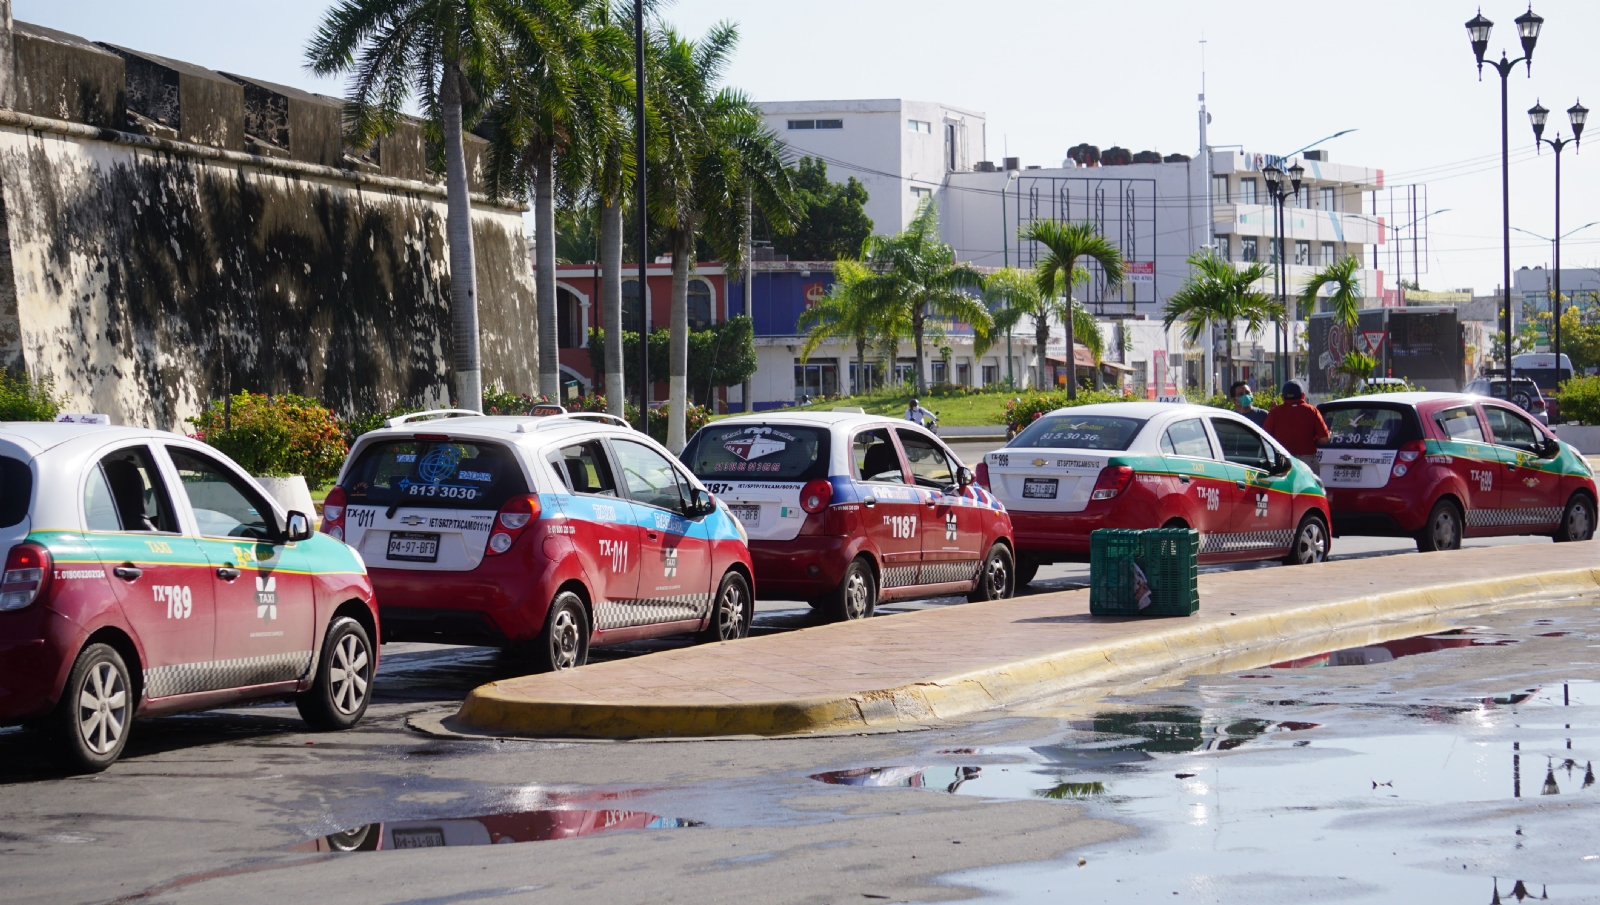 Los operadores de taxis no pueden establecer el costo tarifario de acuerdo con el tráfico que hay en la ciudad